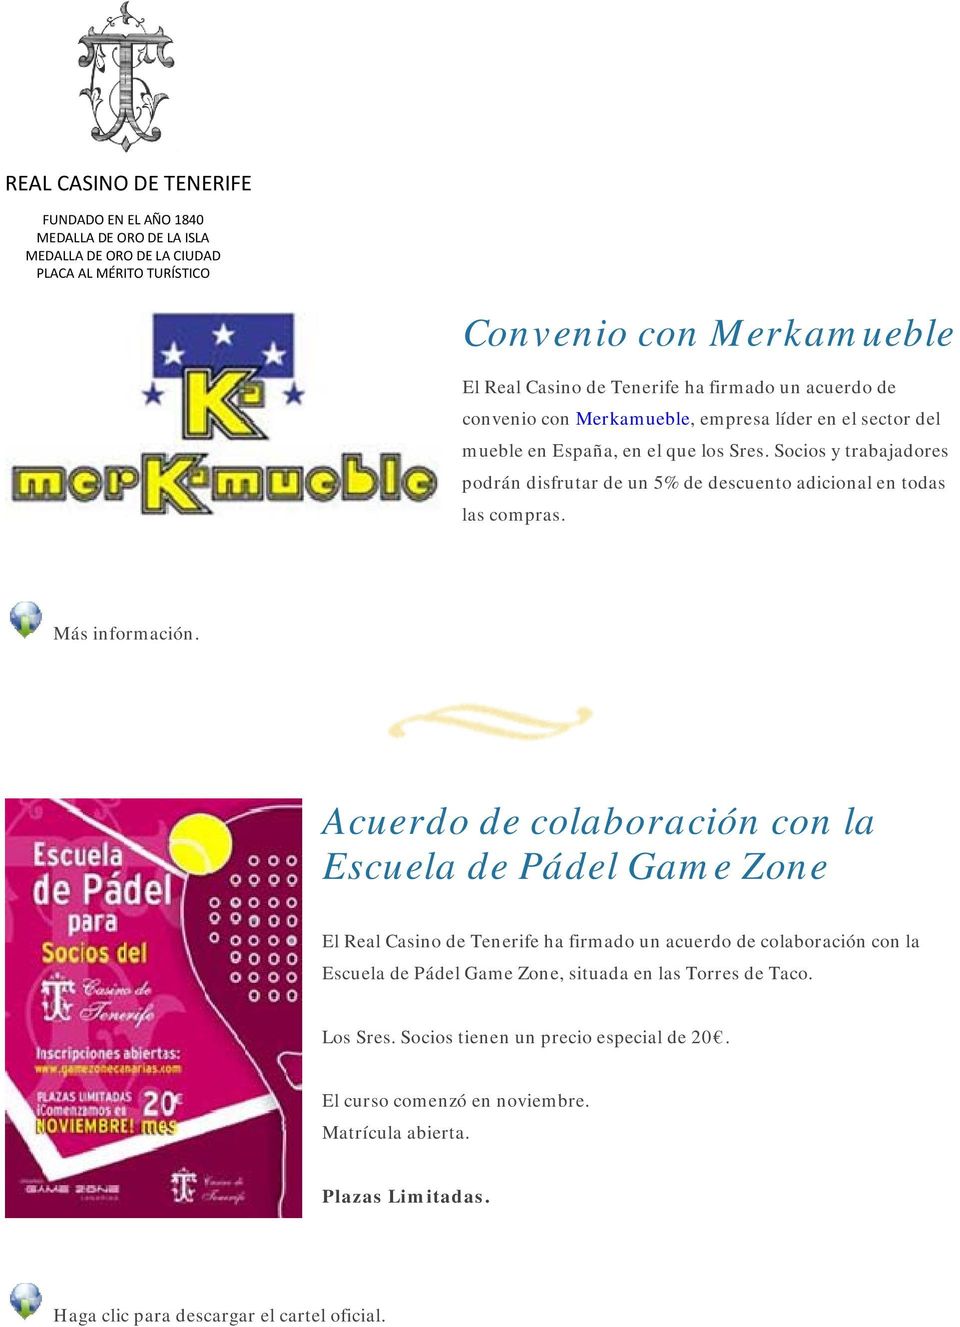 Acuerdo de colaboración con la Escuela de Pádel Game Zone El Real Casino de Tenerife ha firmado un acuerdo de colaboración con la Escuela de Pádel Game Zone,